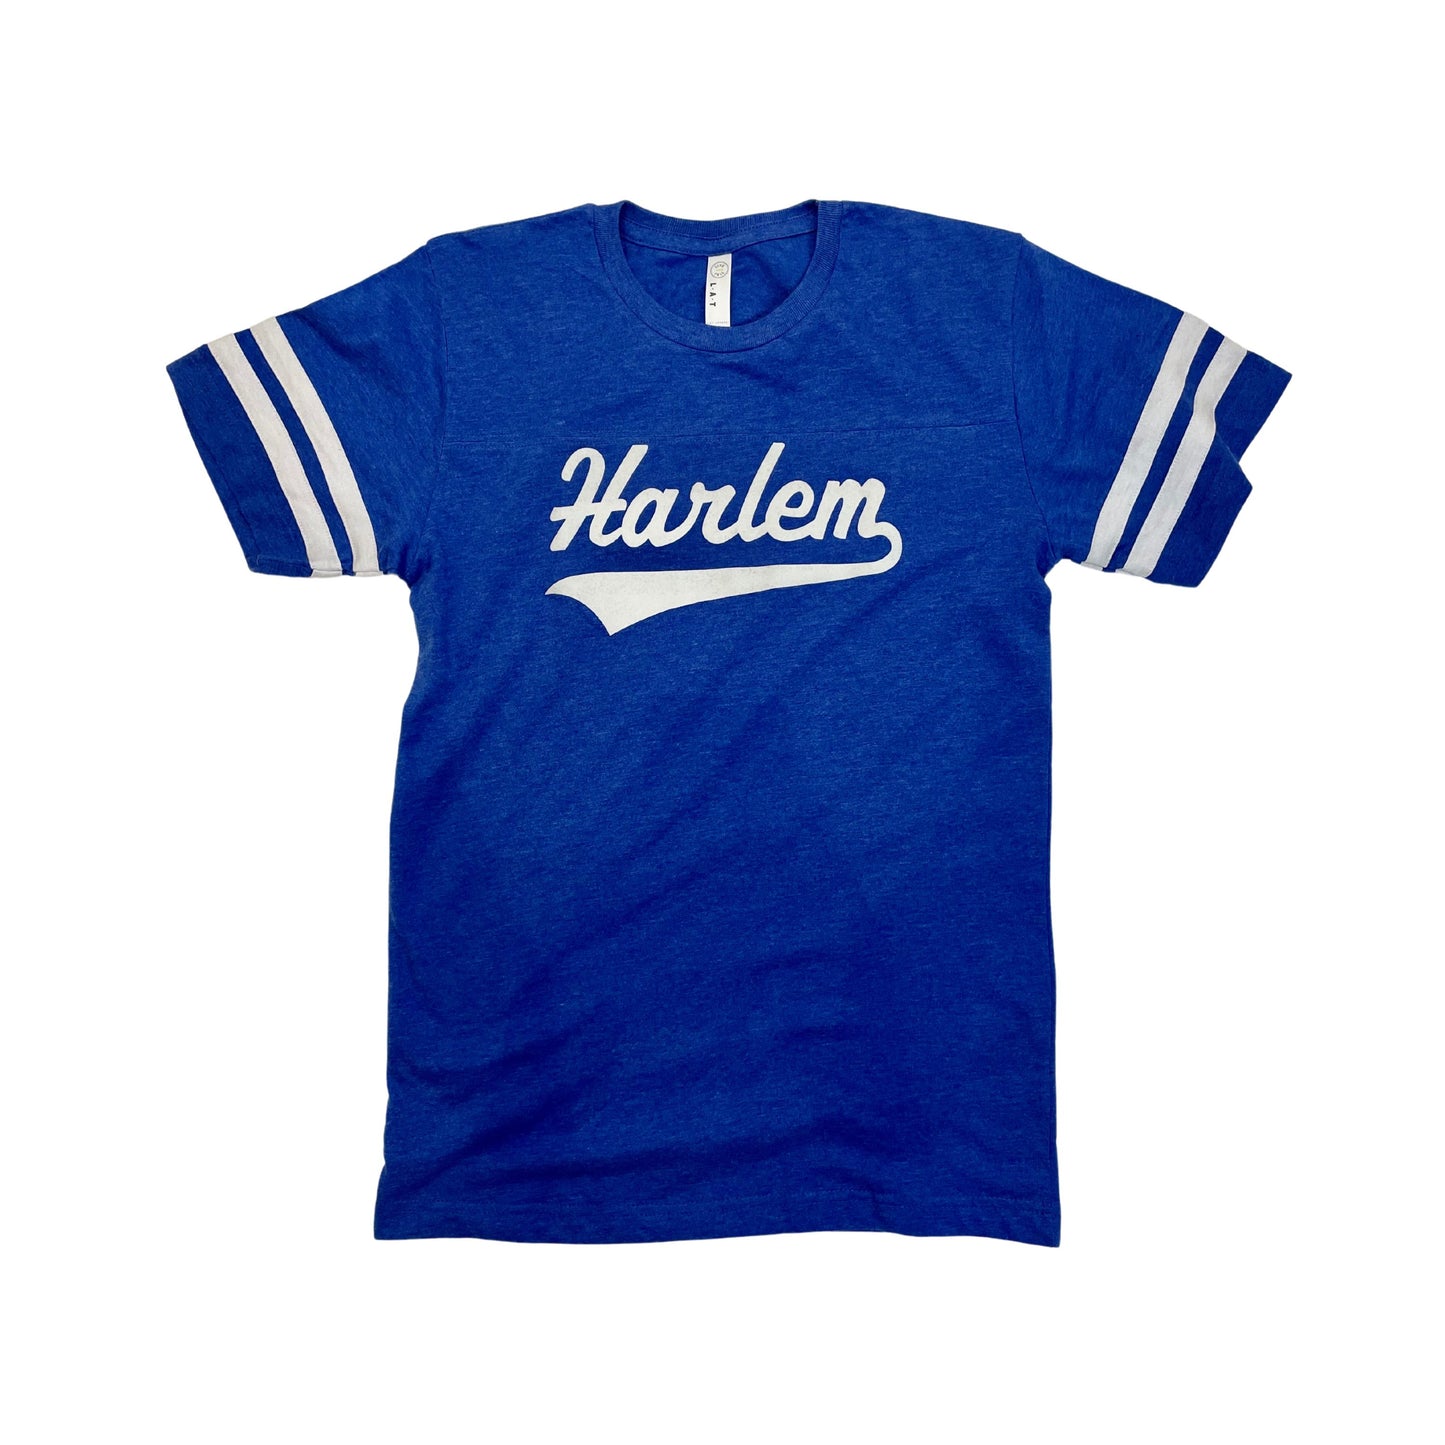 Harlem Football Shirt